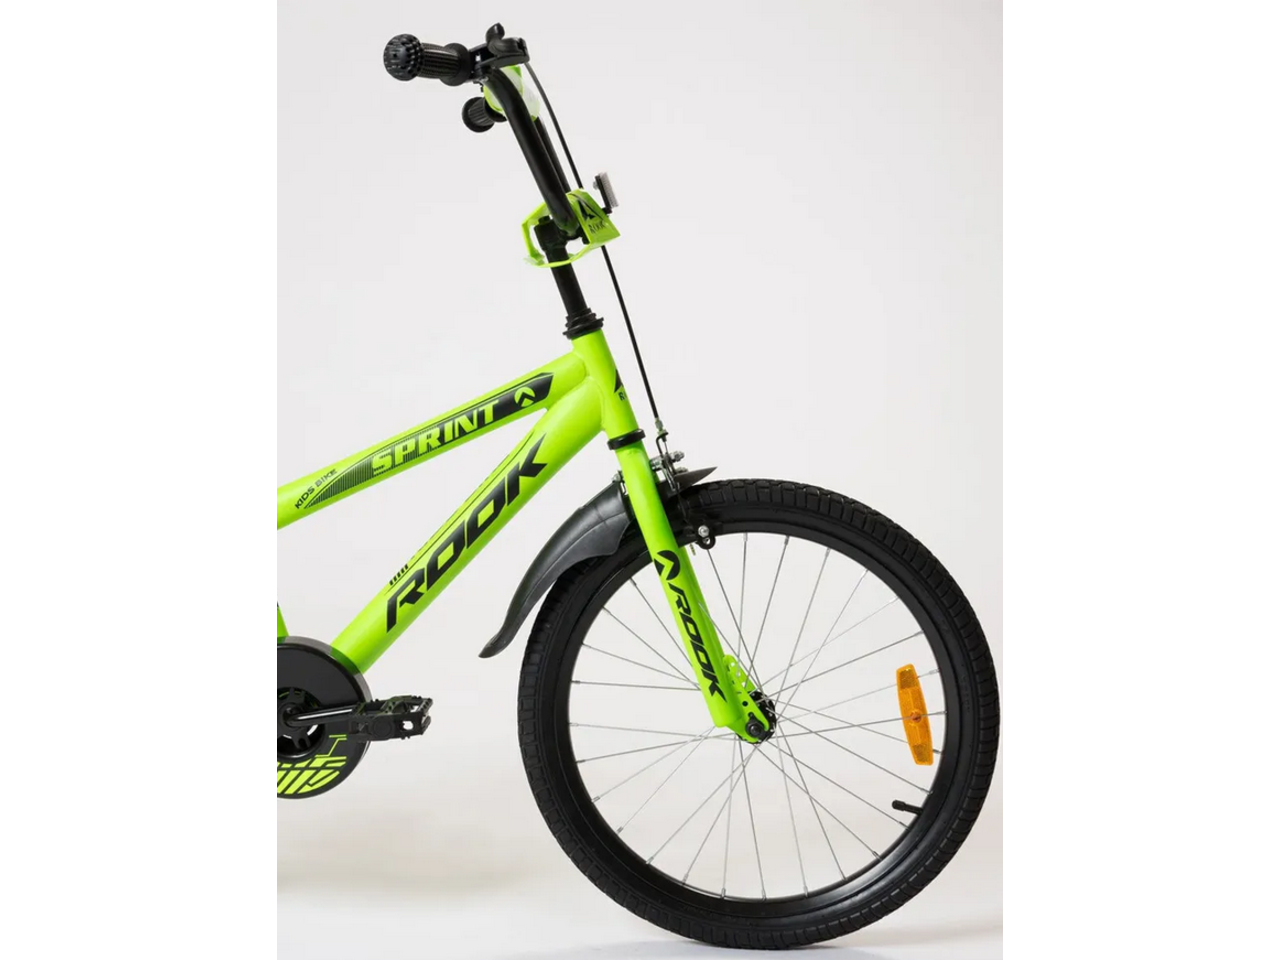 Детский велосипед Rook Sprint 16 (зеленый)